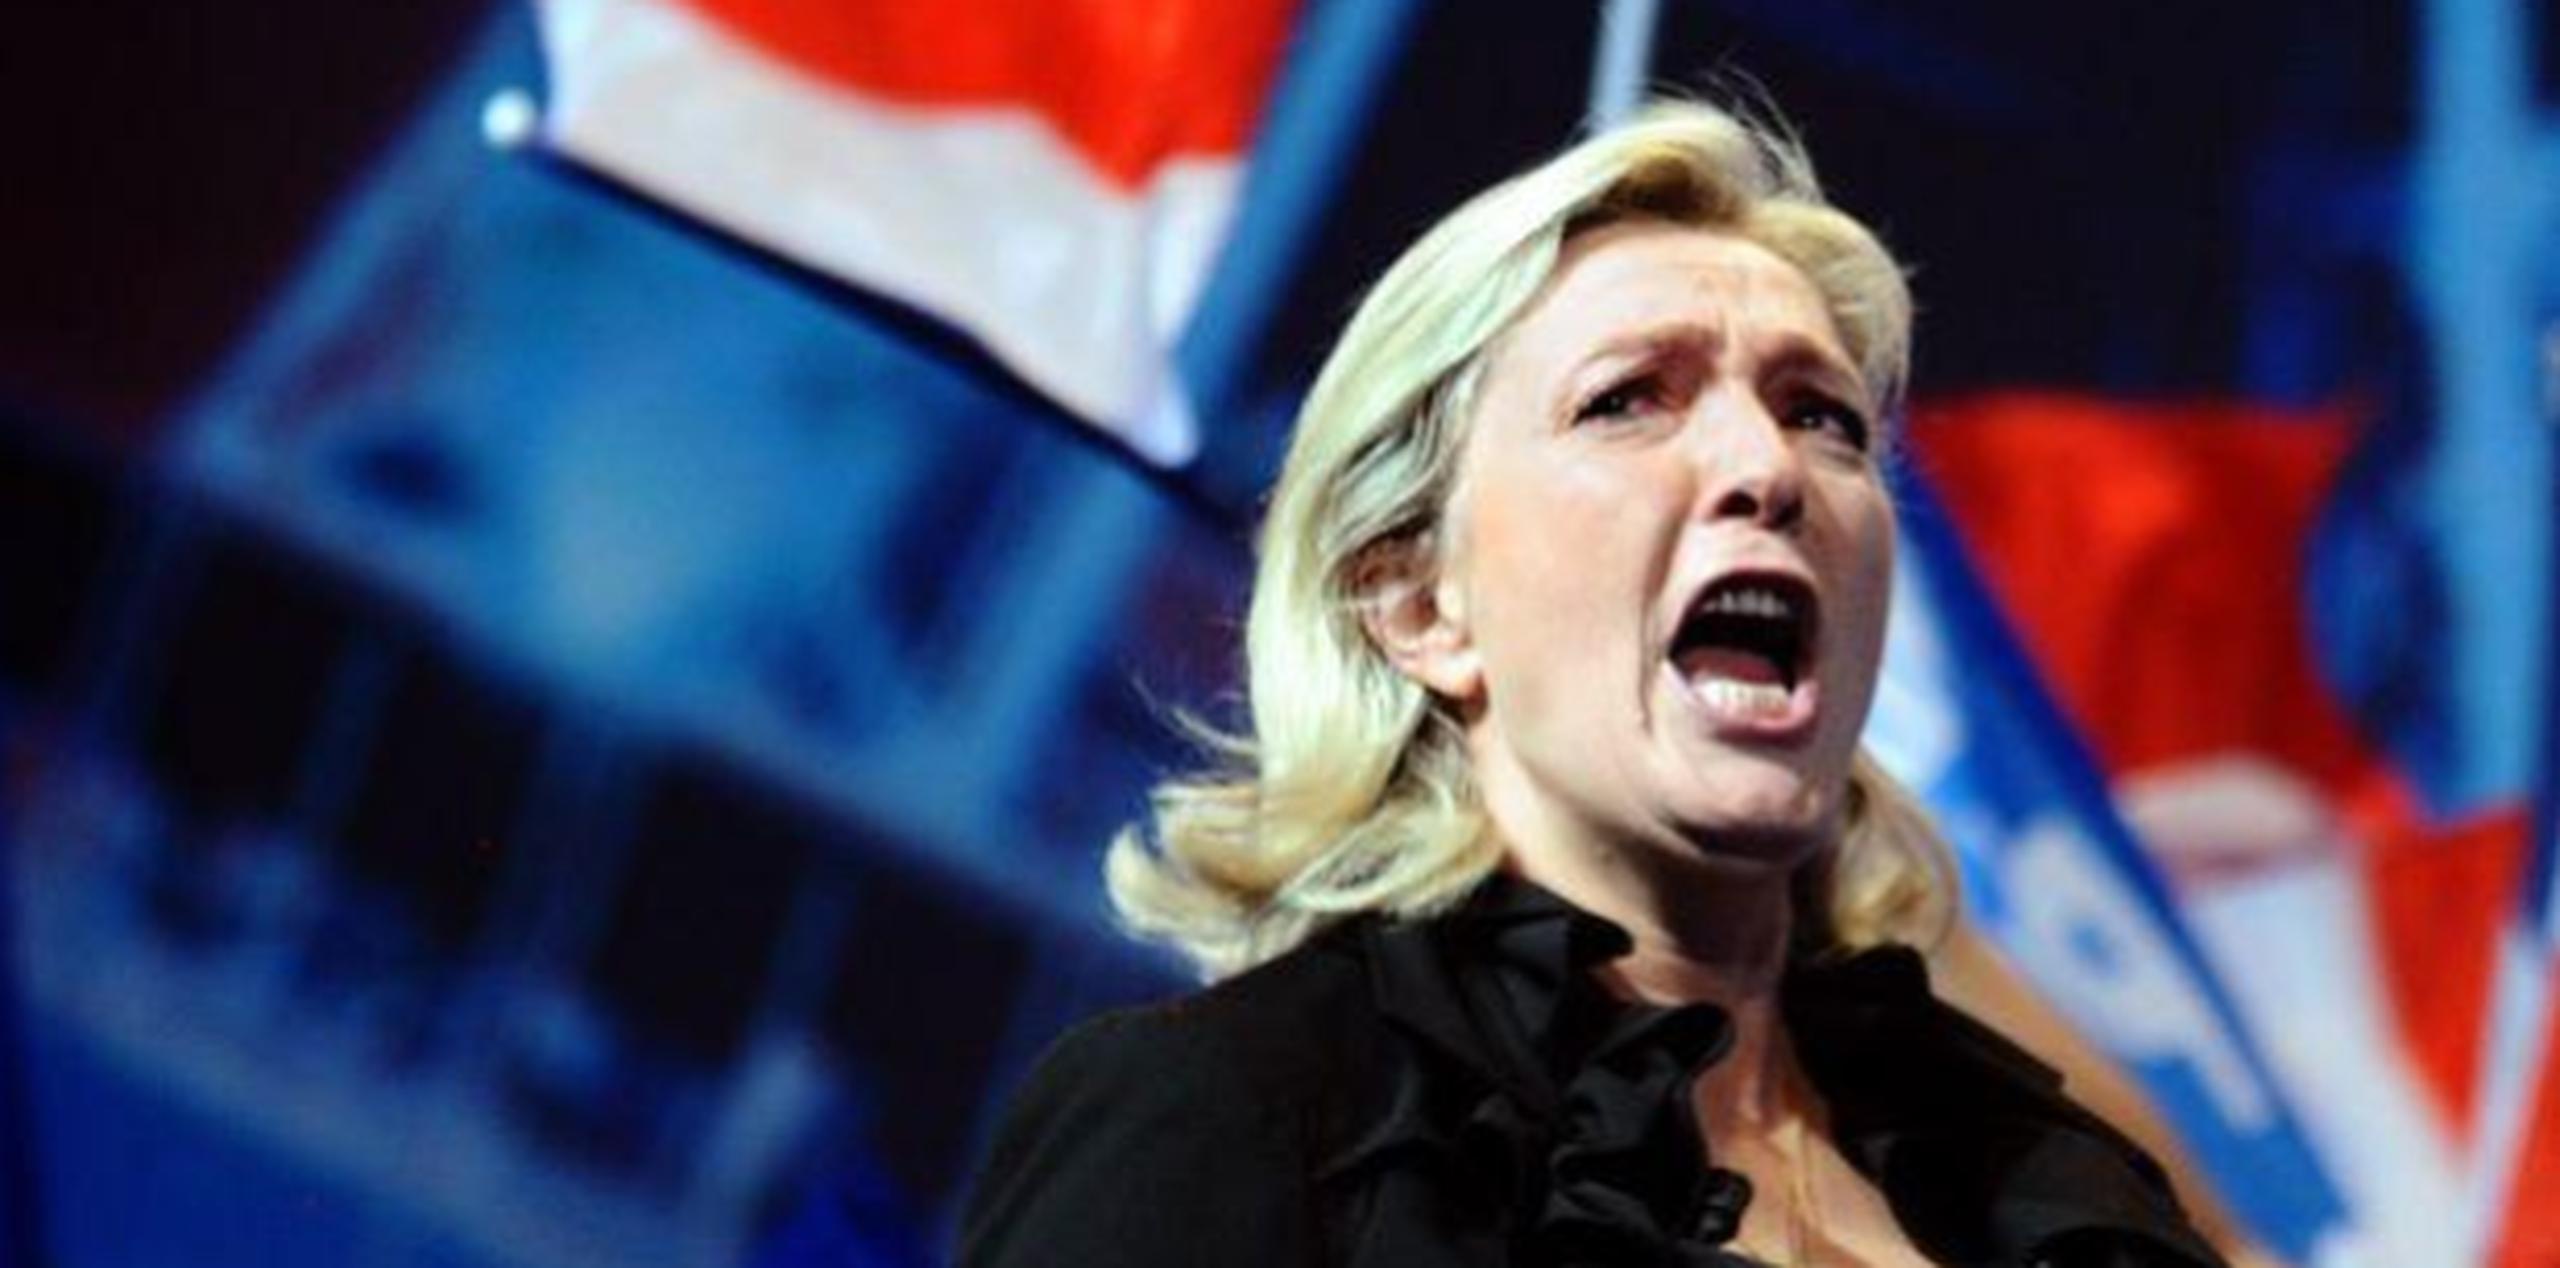 Marine Le Pen ha colocado al Frente Nacional como una fuerza antiinmigración y euroescéptica. Podría convertirse en la primera líder de extrema derecha en Francia desde la Segunda Guerra Mundial. (GDA)